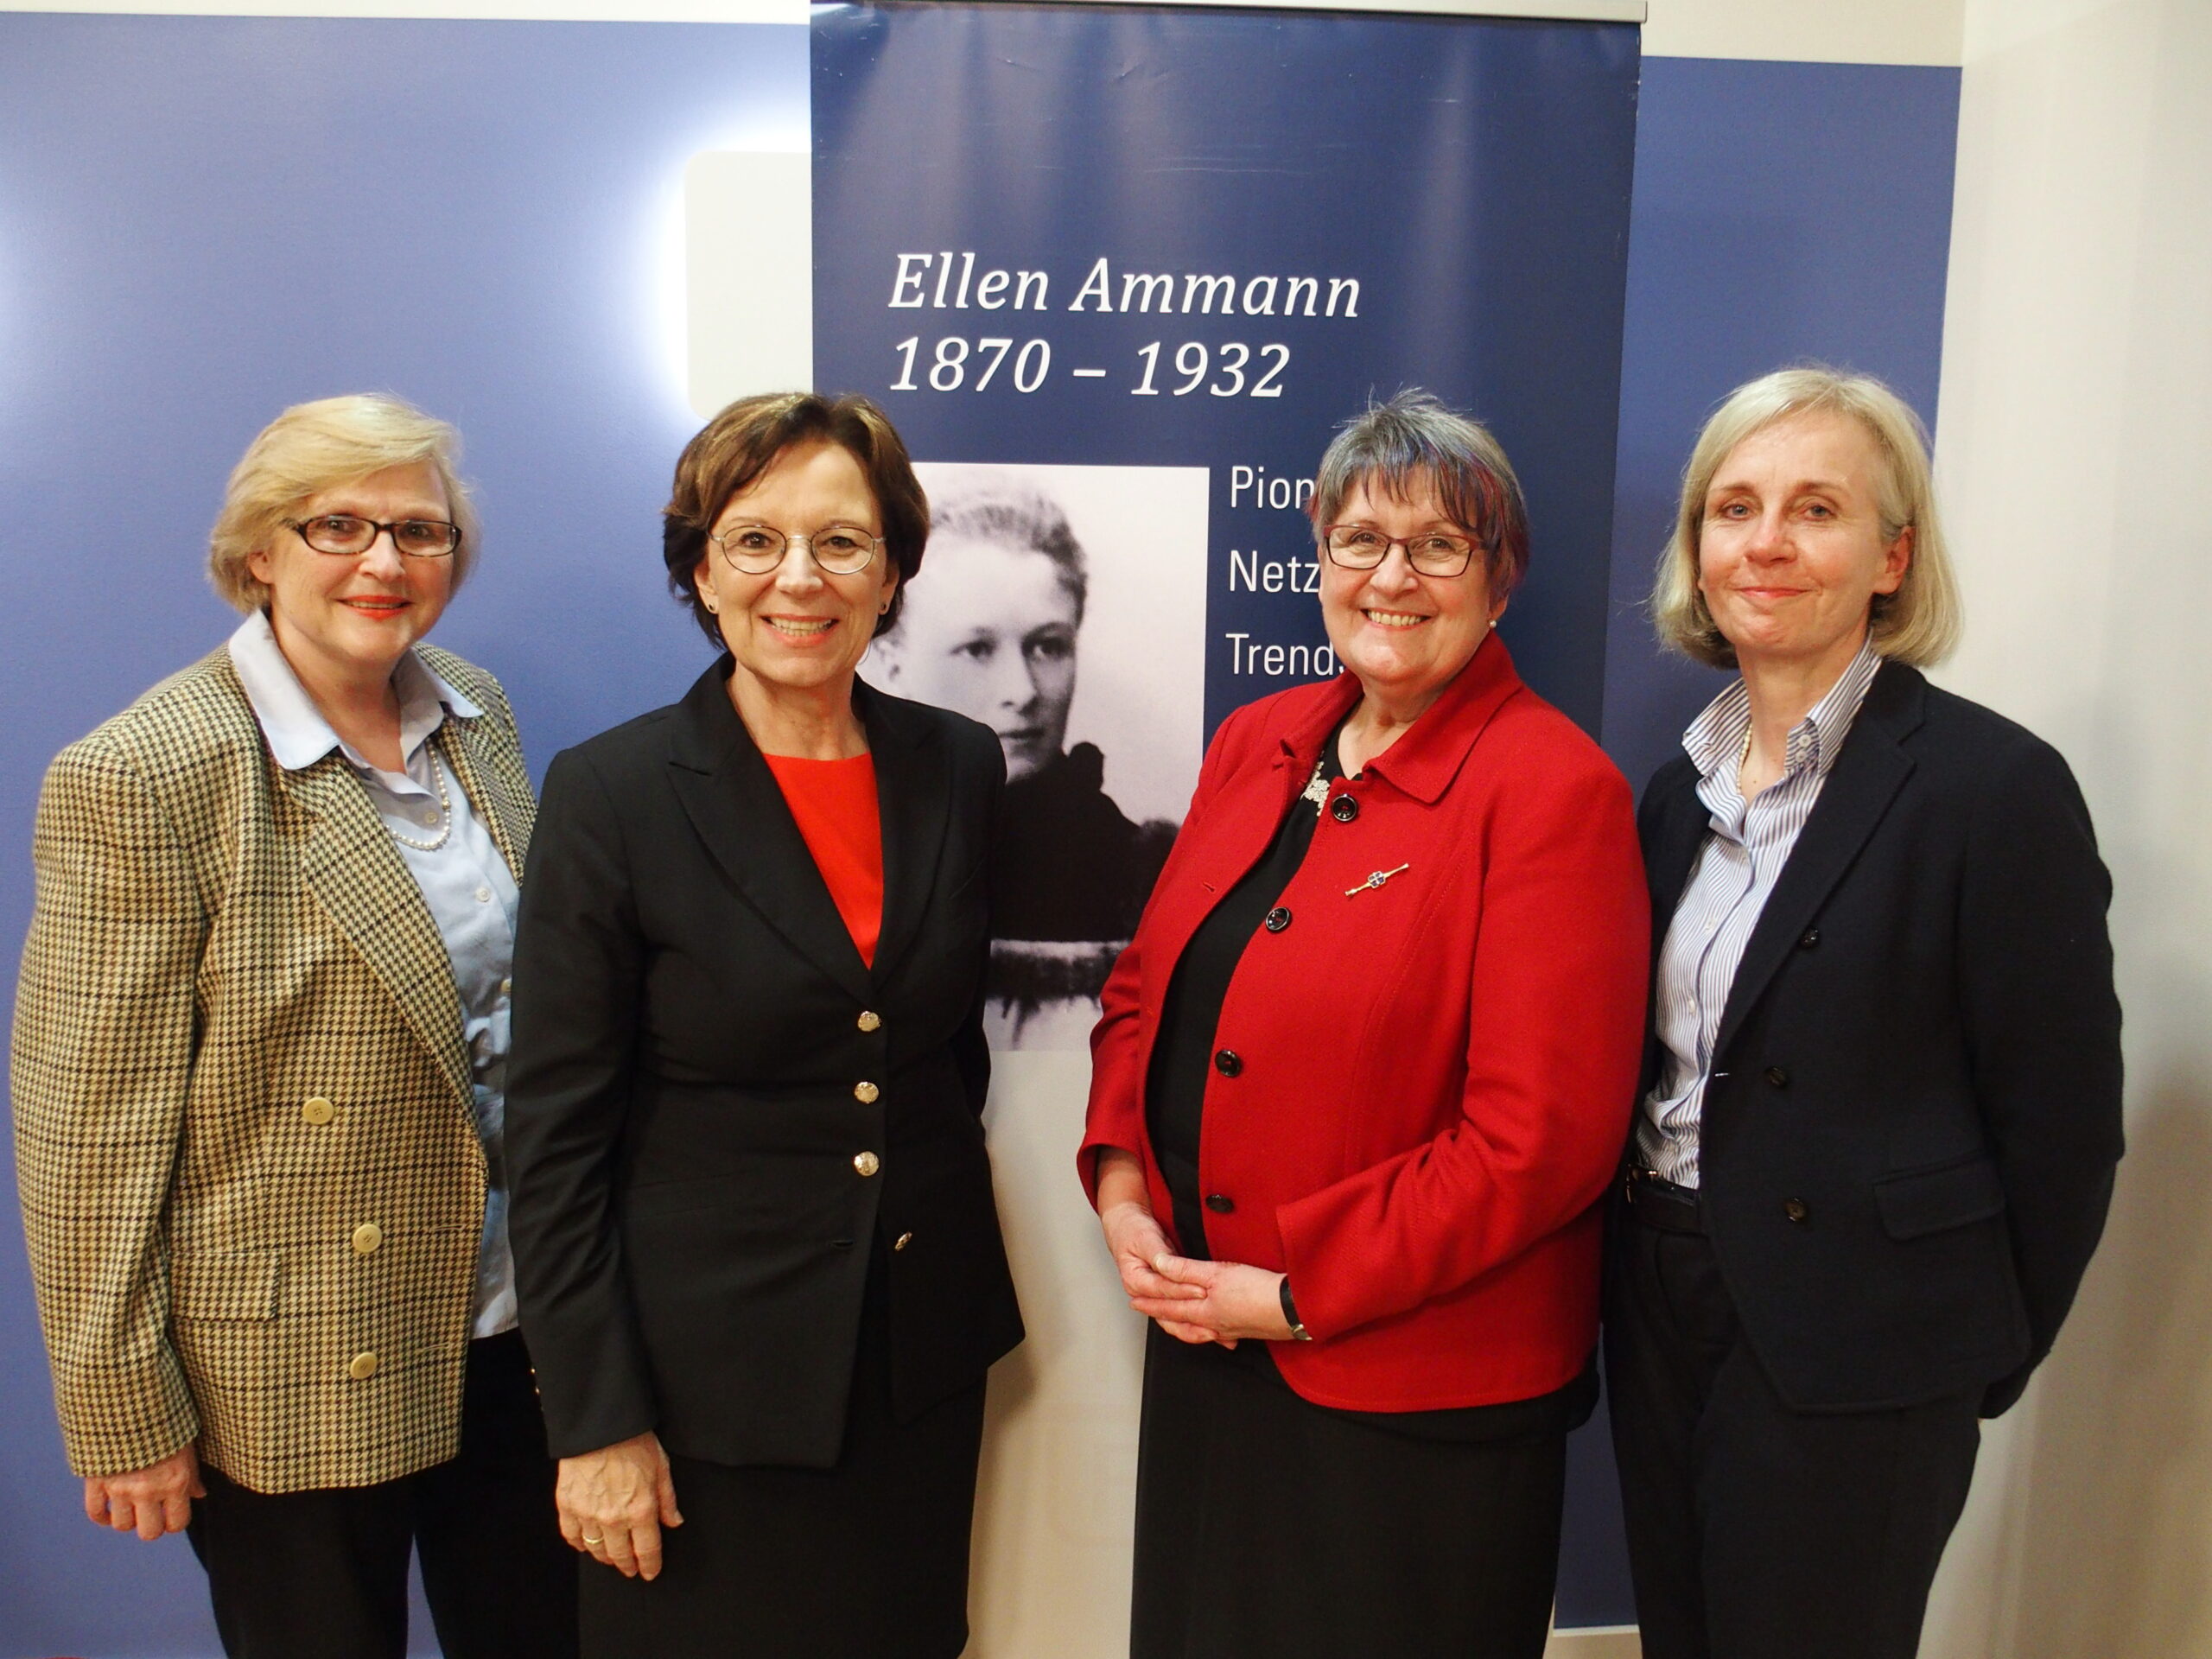 100 Jahre Frauenwahlrecht: Ellen Ammann als Vorbild